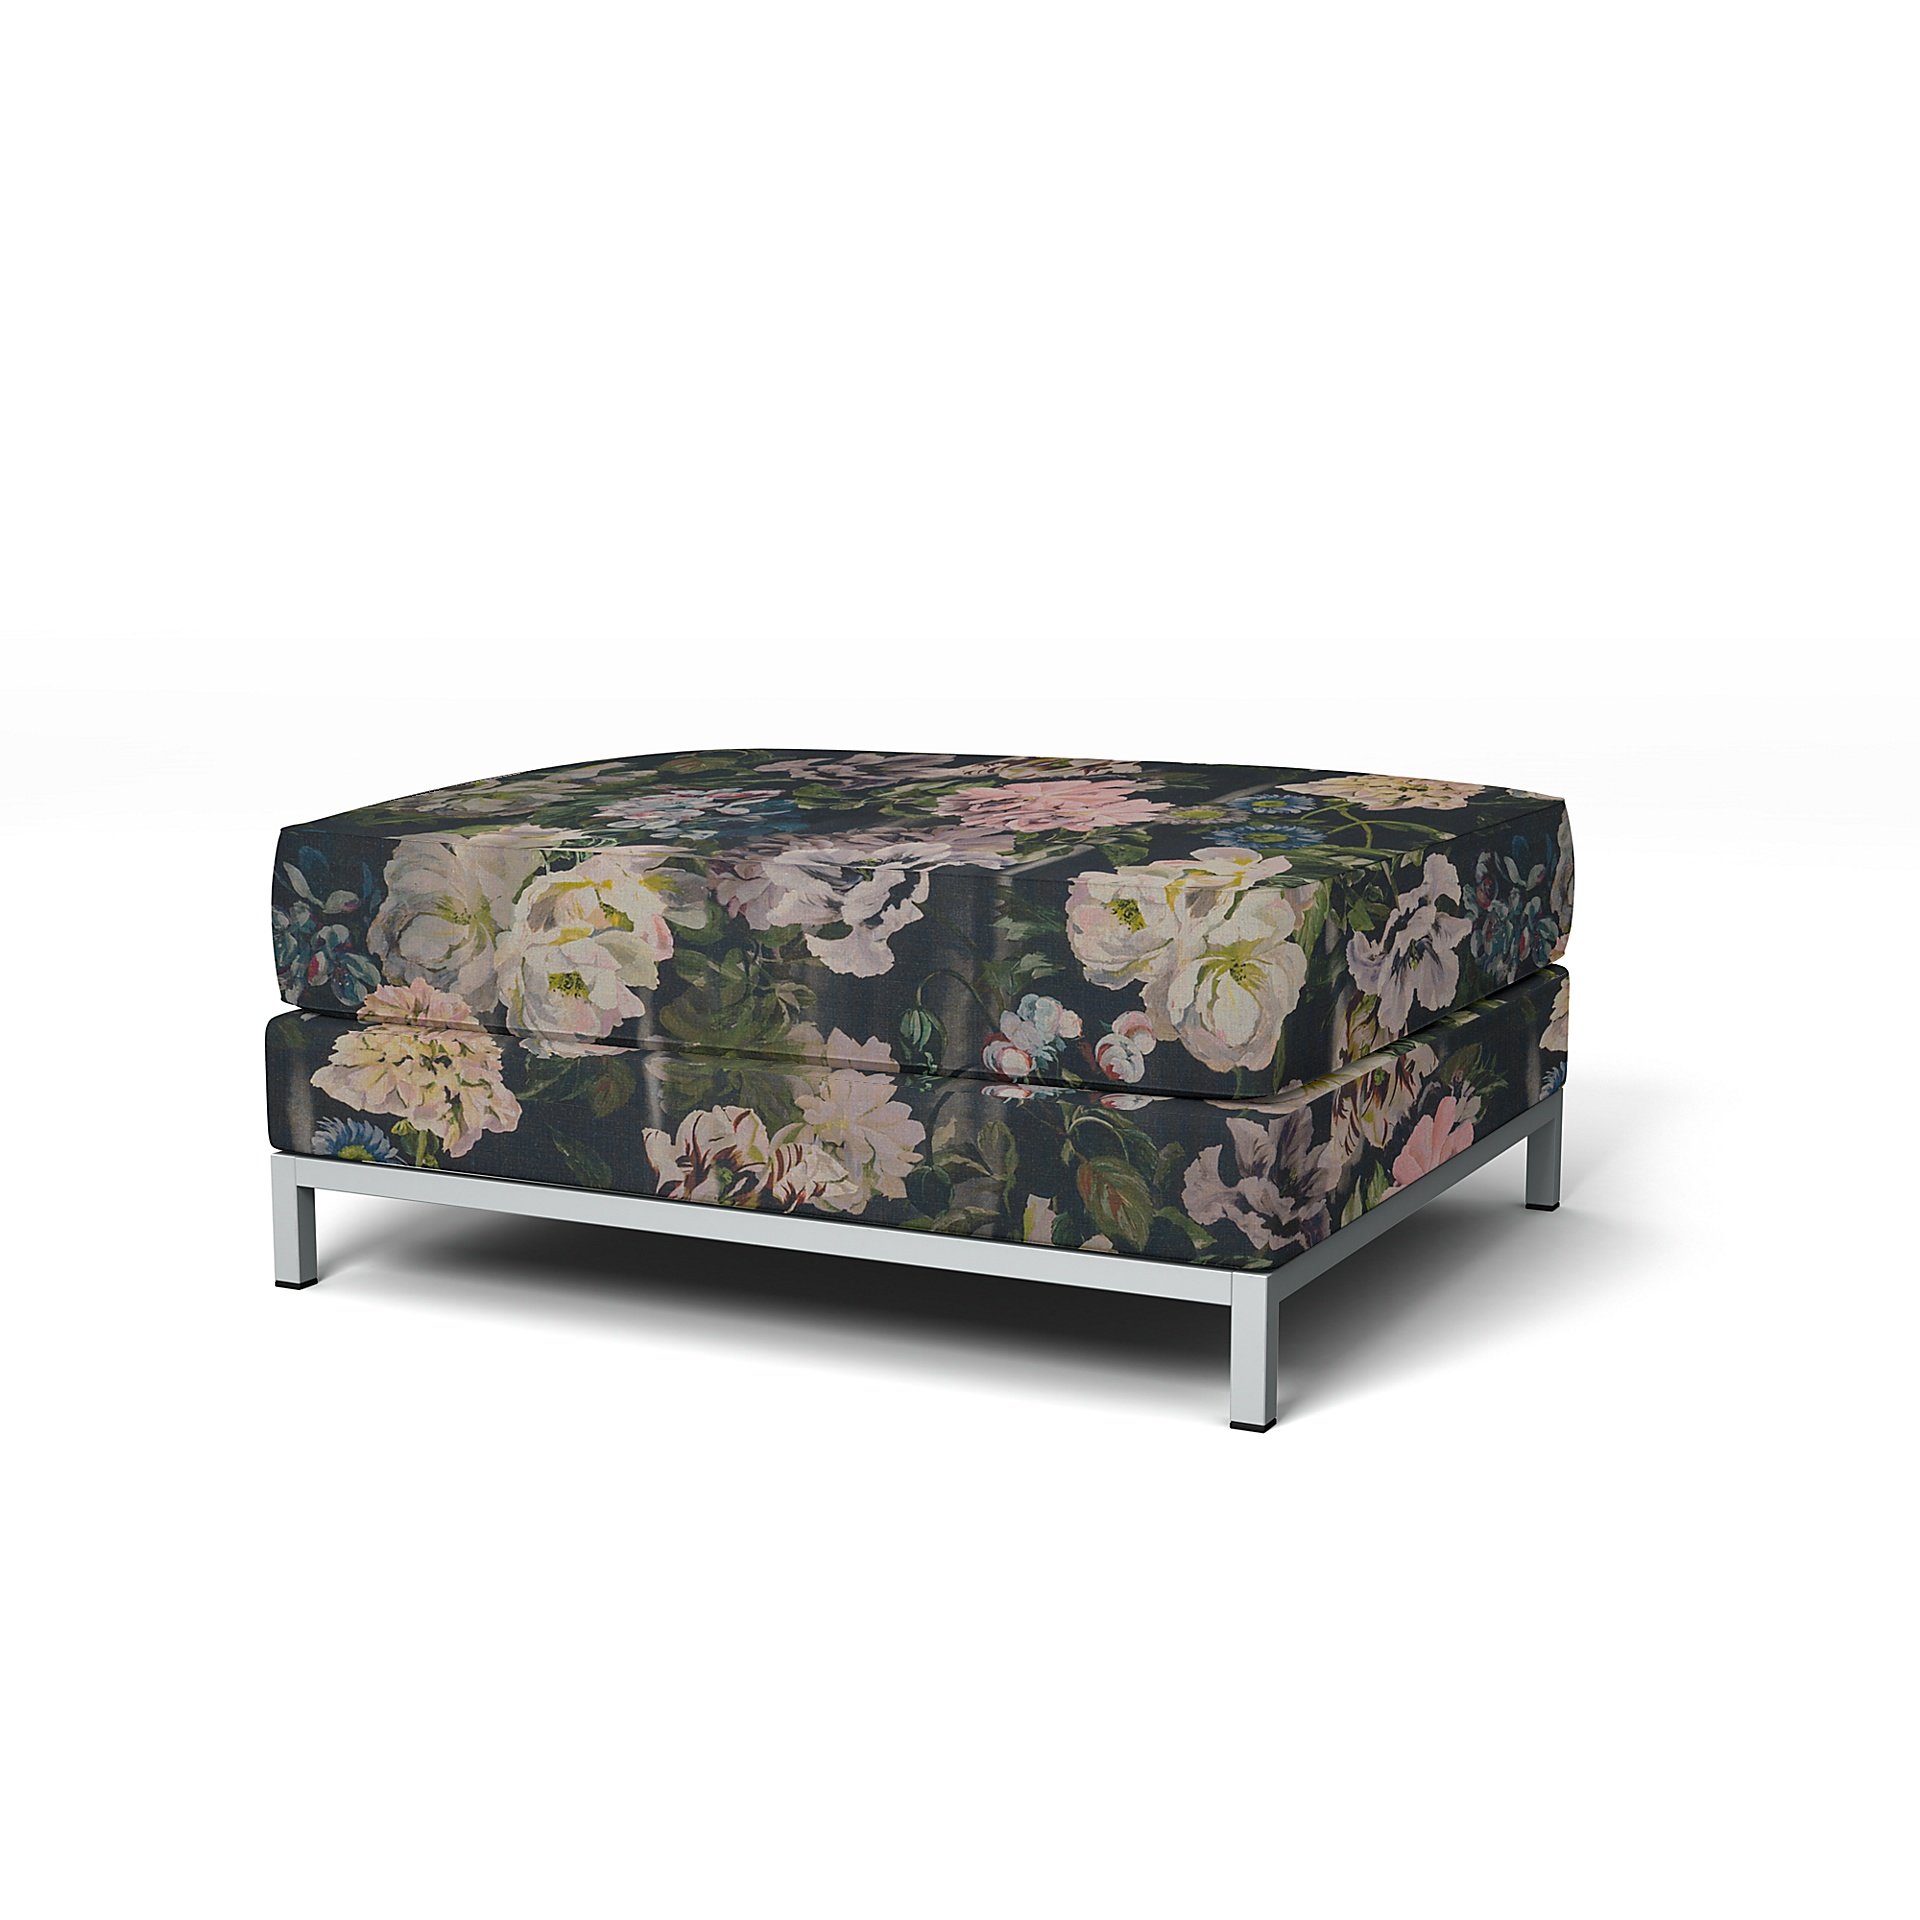 IKEA - Kramfors Footstool Cover, Delft Flower - Graphite, Linen - Bemz